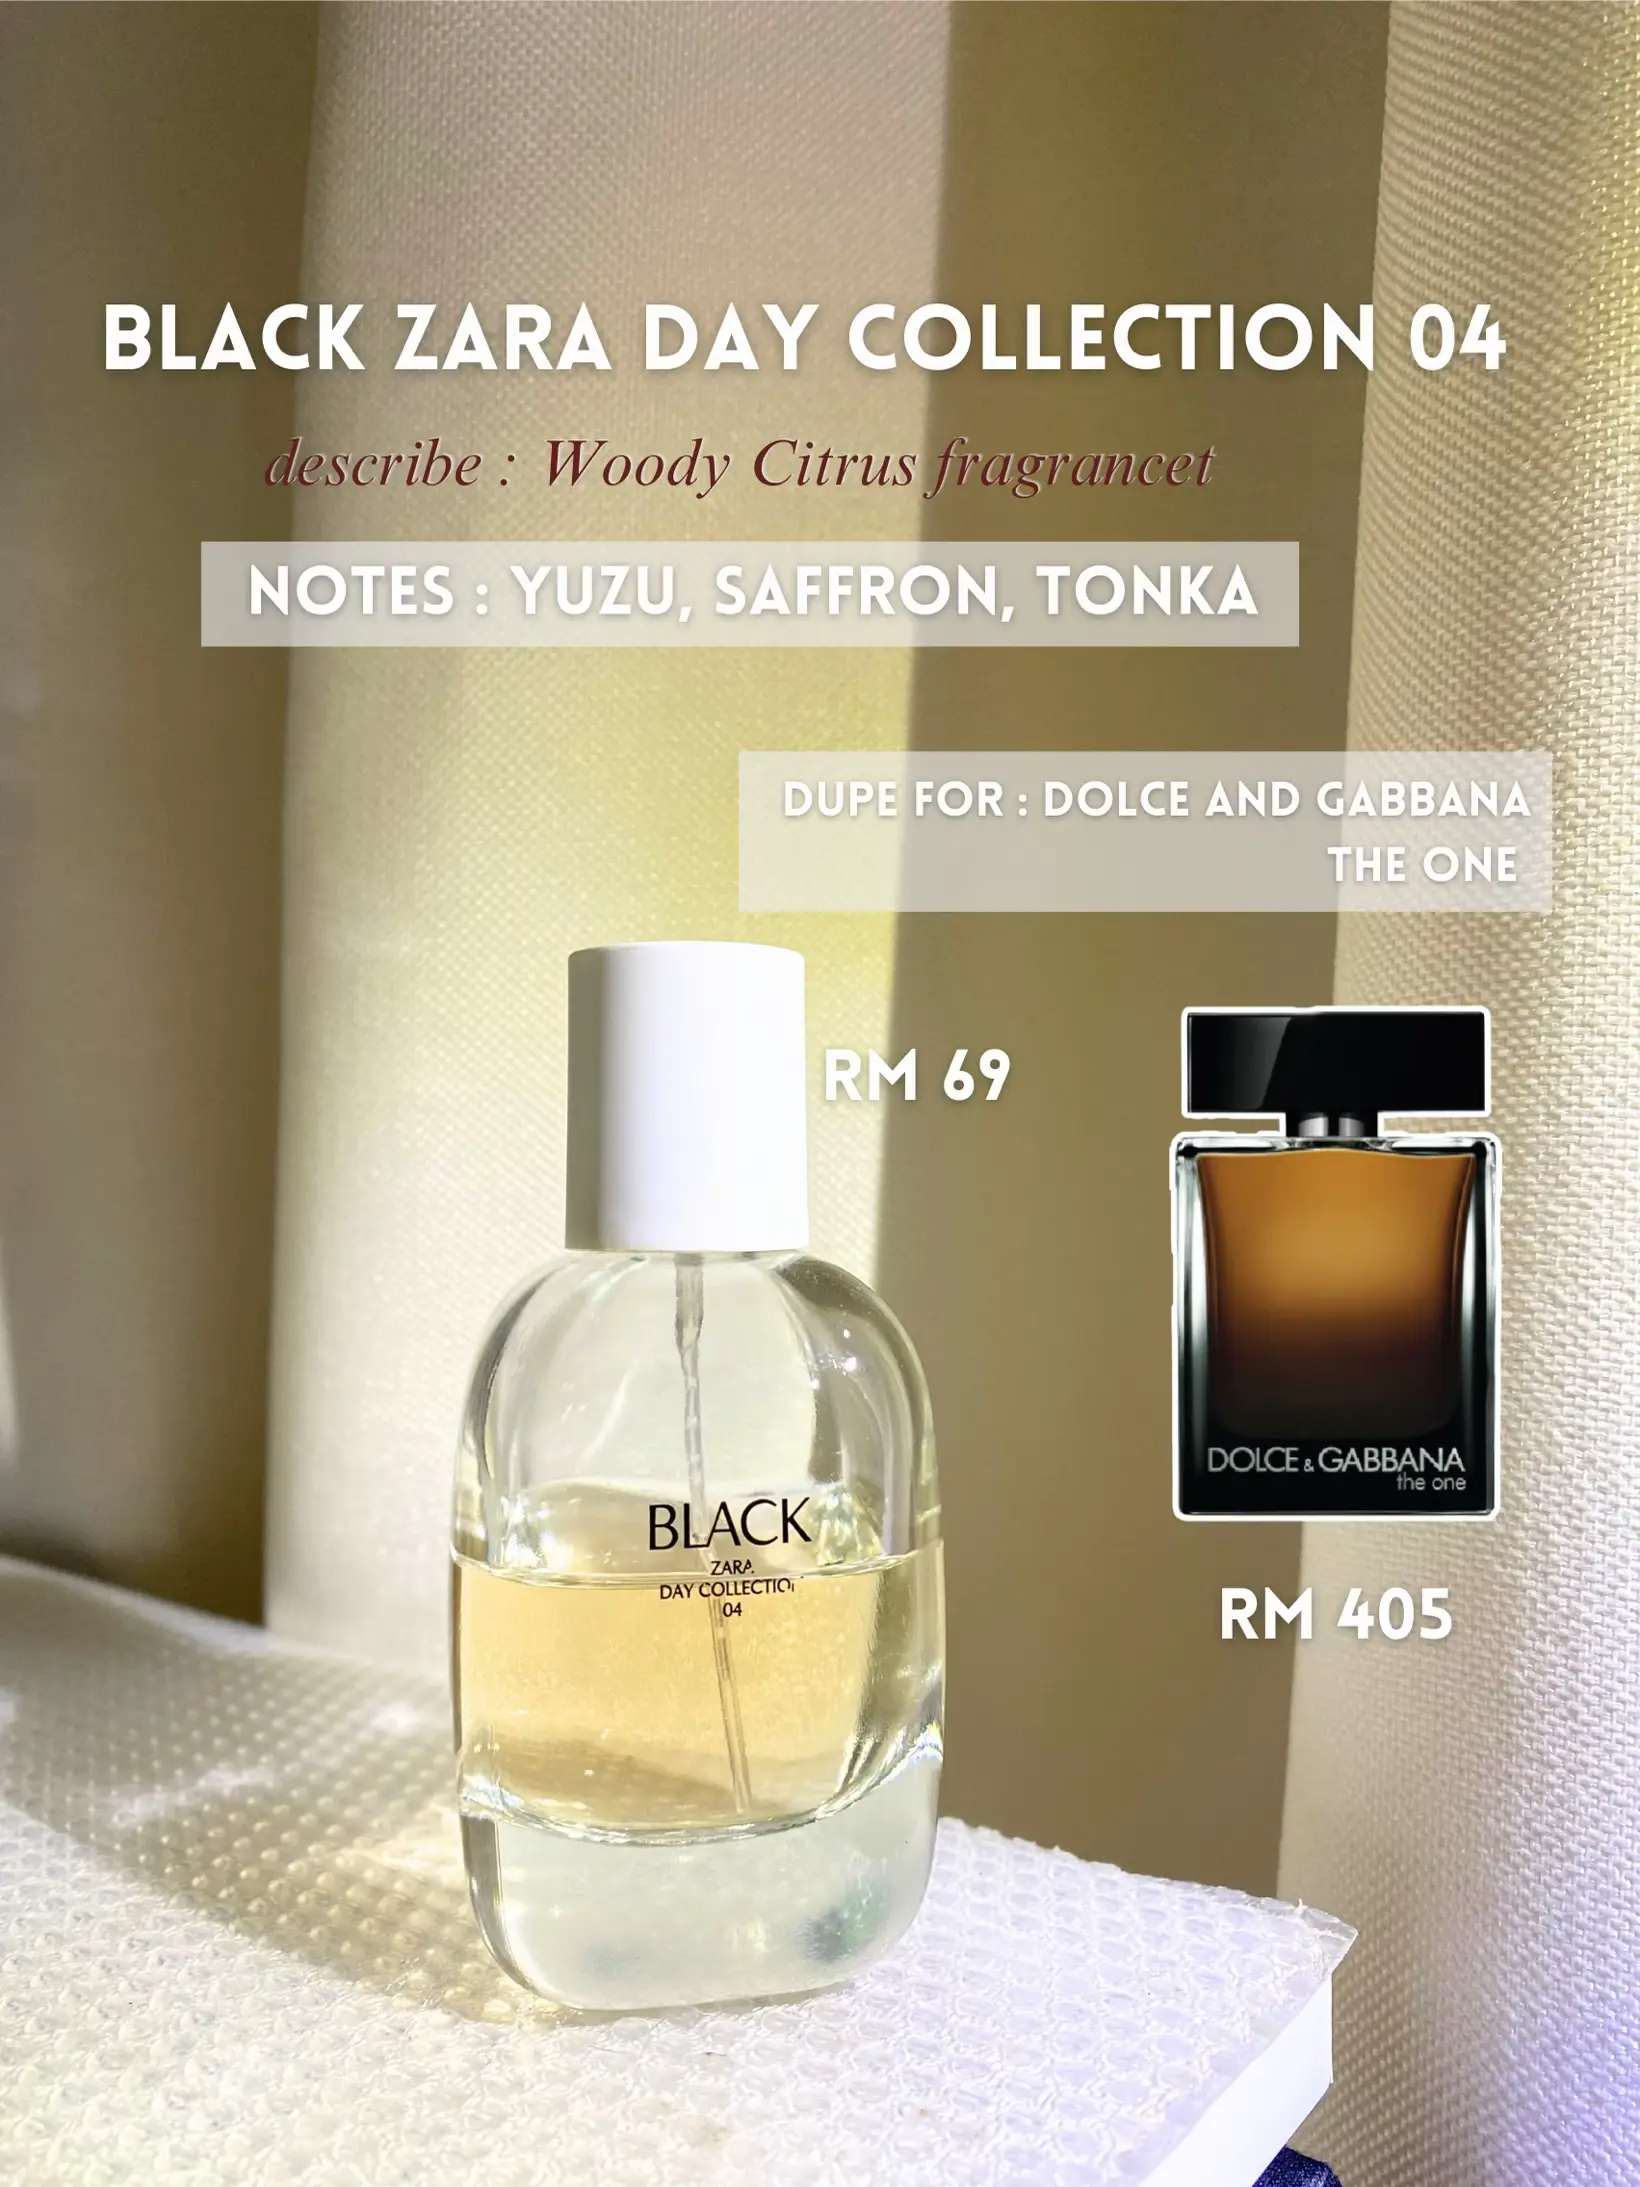 These 3 Zara Perfumes Are Great Dupes!, Galeri disiarkan oleh Munirah